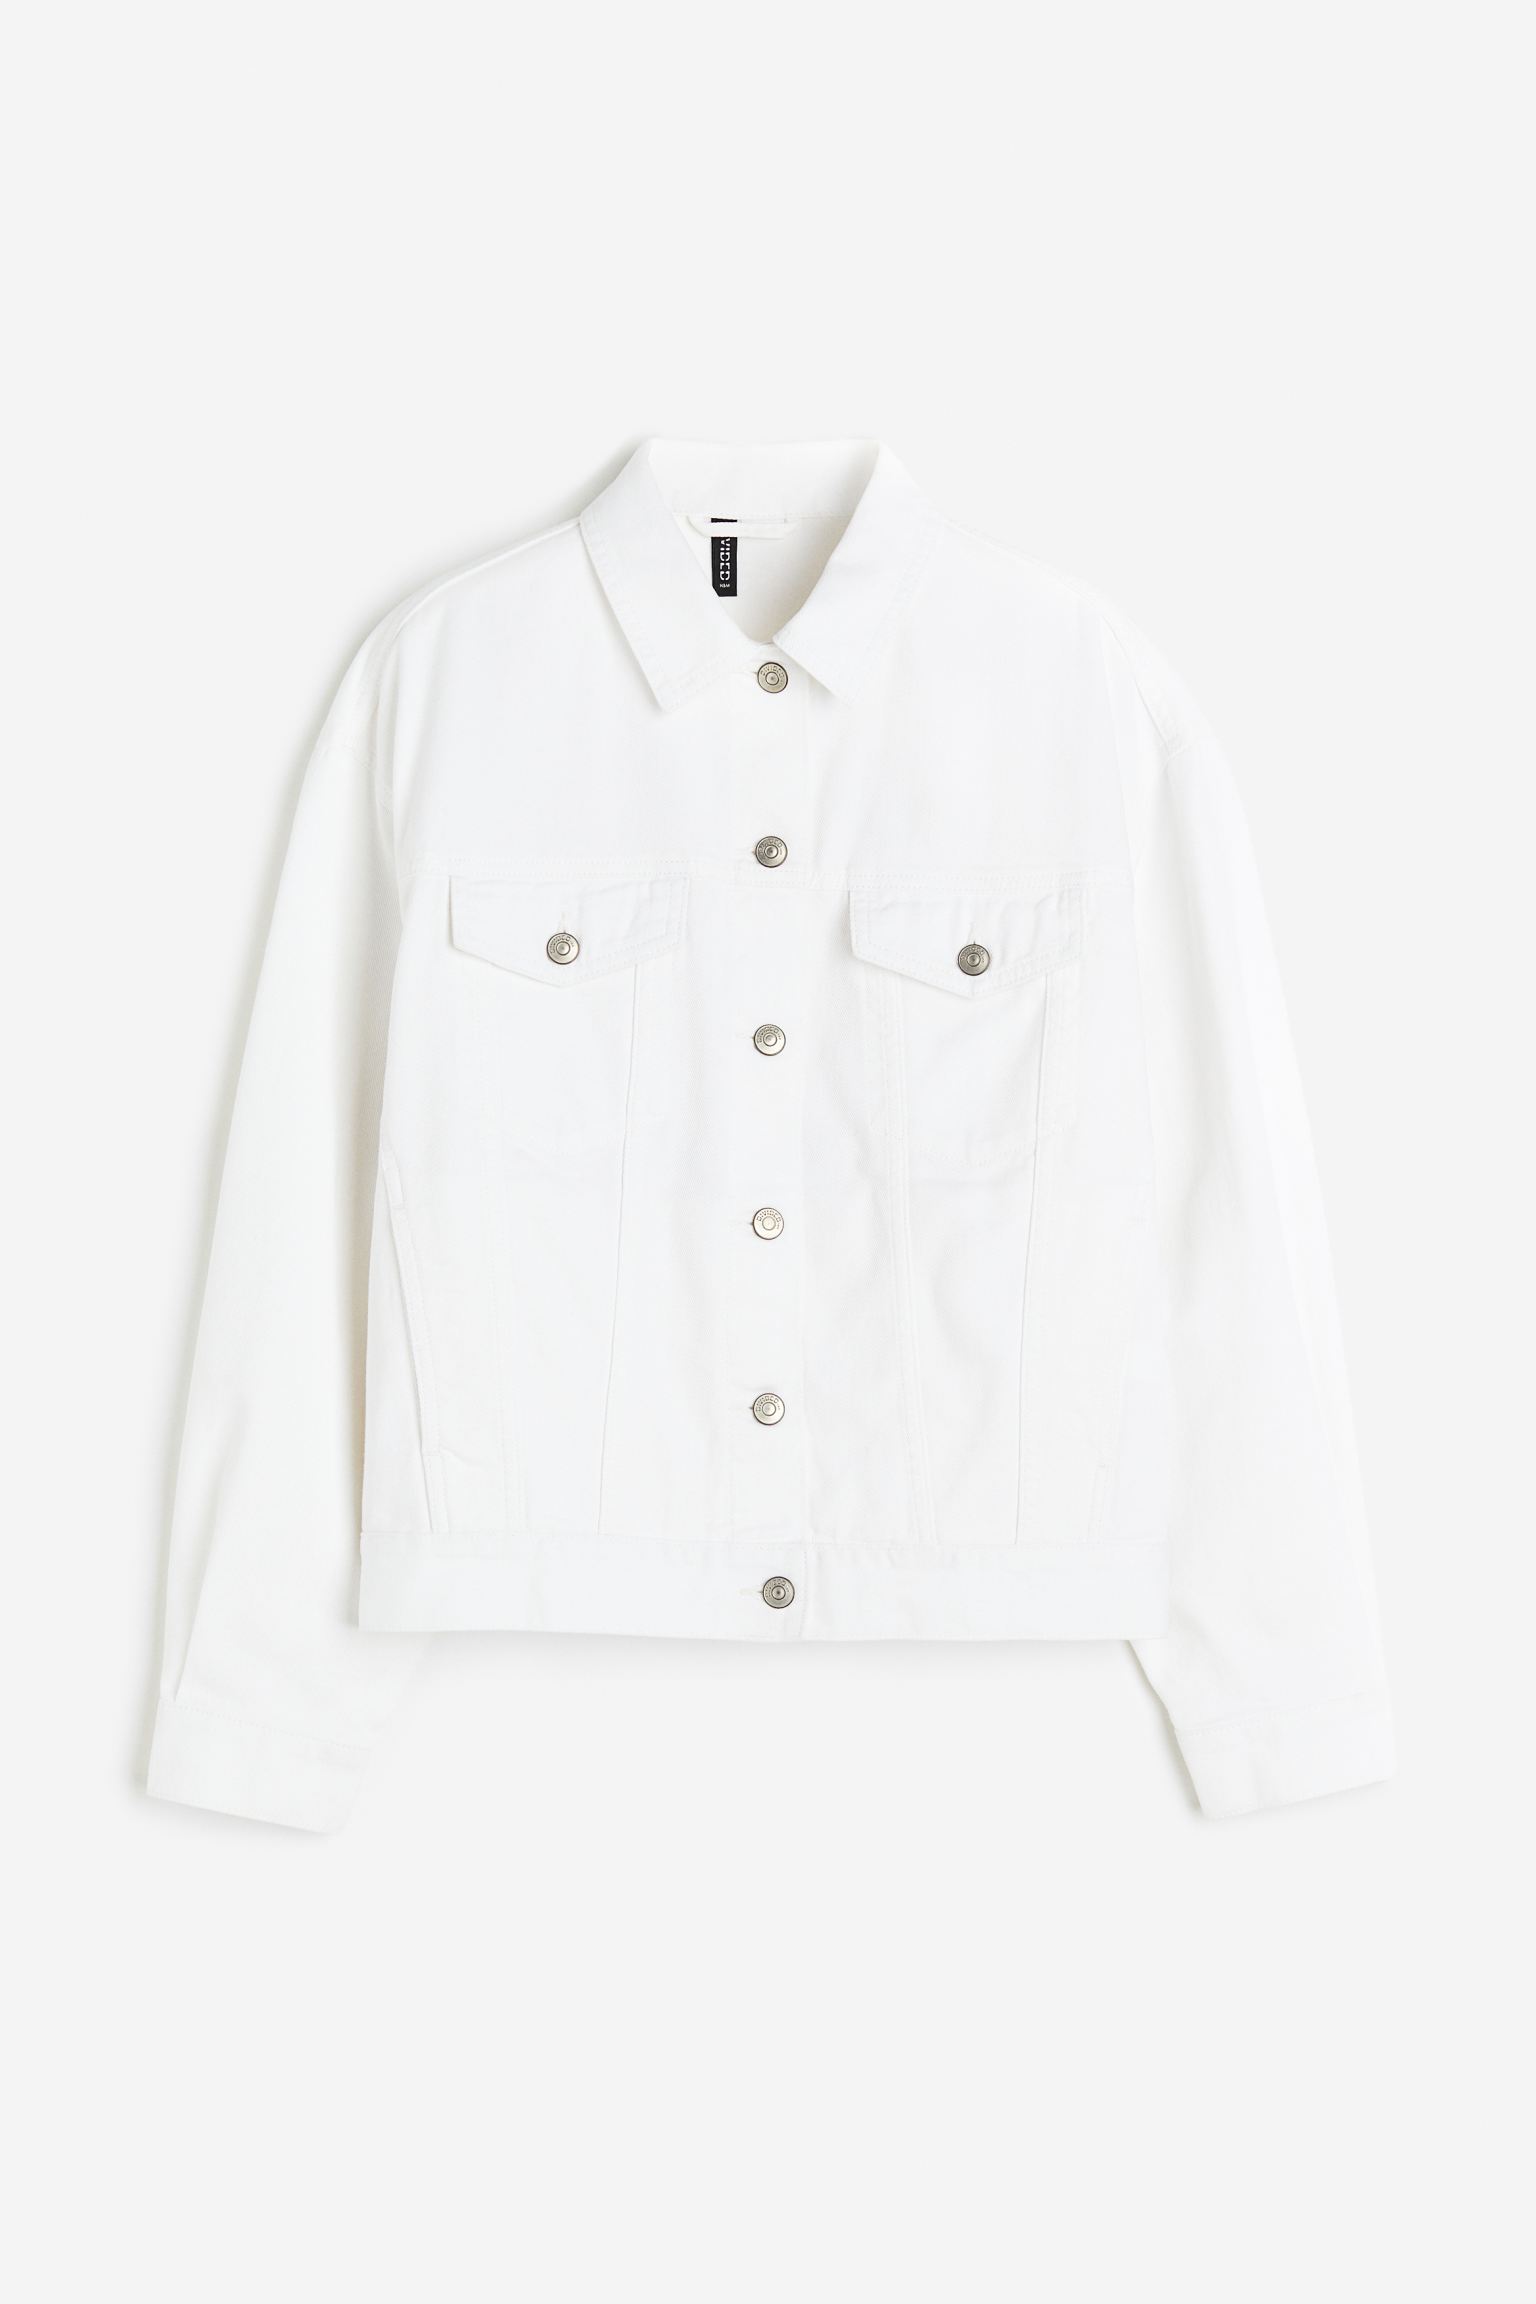 Джинсовая куртка женская H&M 1121726005 белая XS (доставка из-за рубежа)